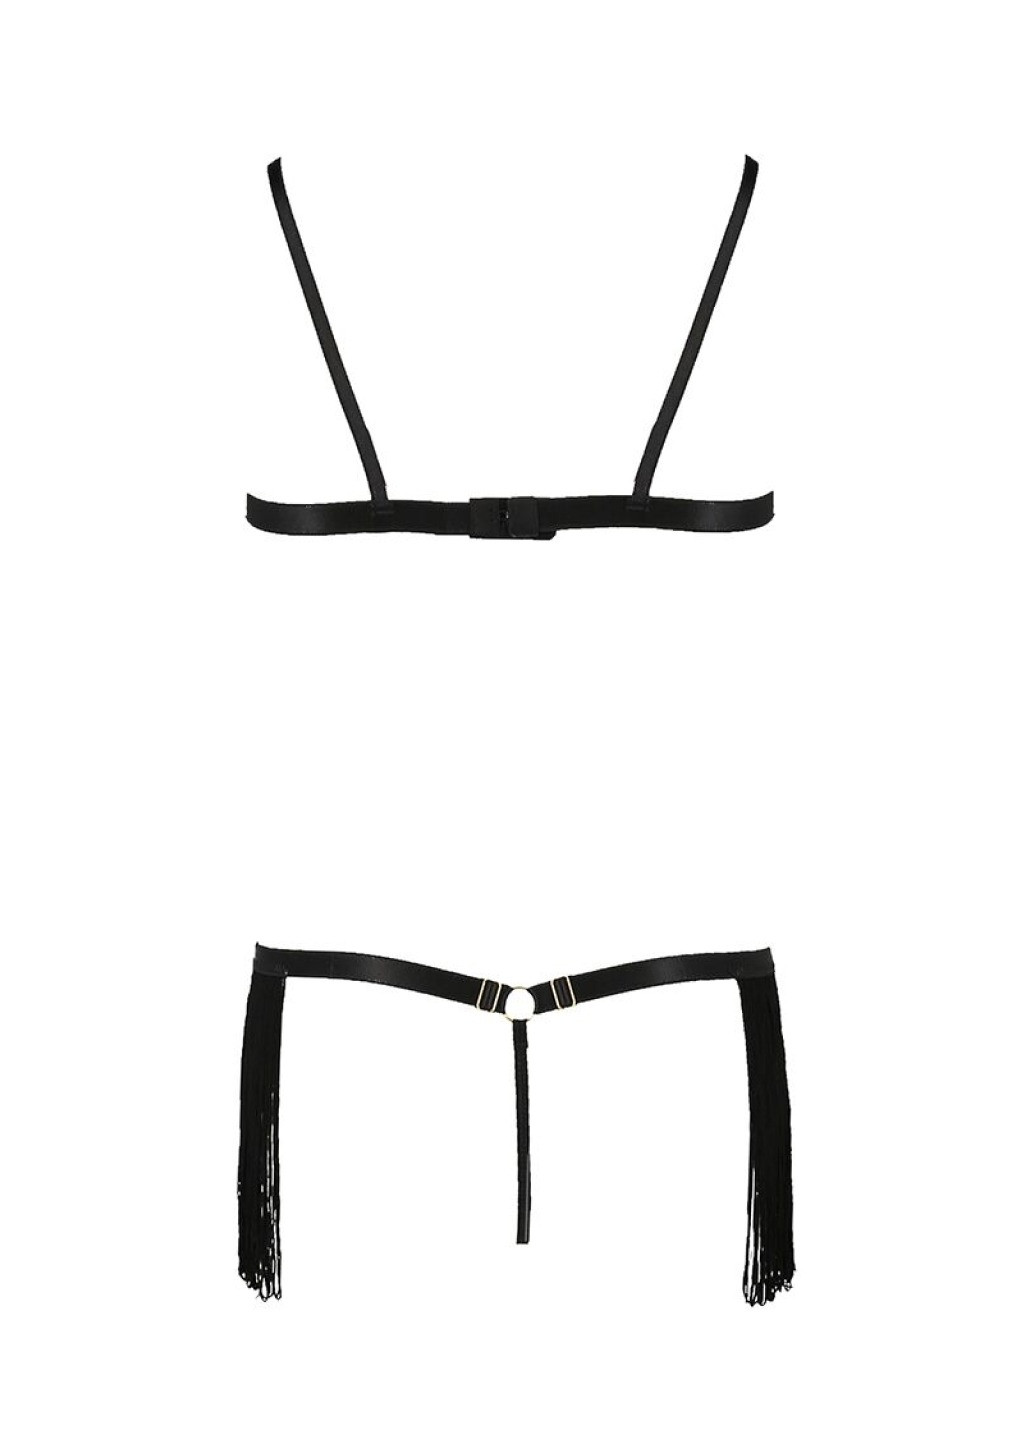 Прозорий демісезонний комплект білизни kassandra set openbra black xxl/3xl - exclusive: ліф з бахроми, трусики-спі Passion